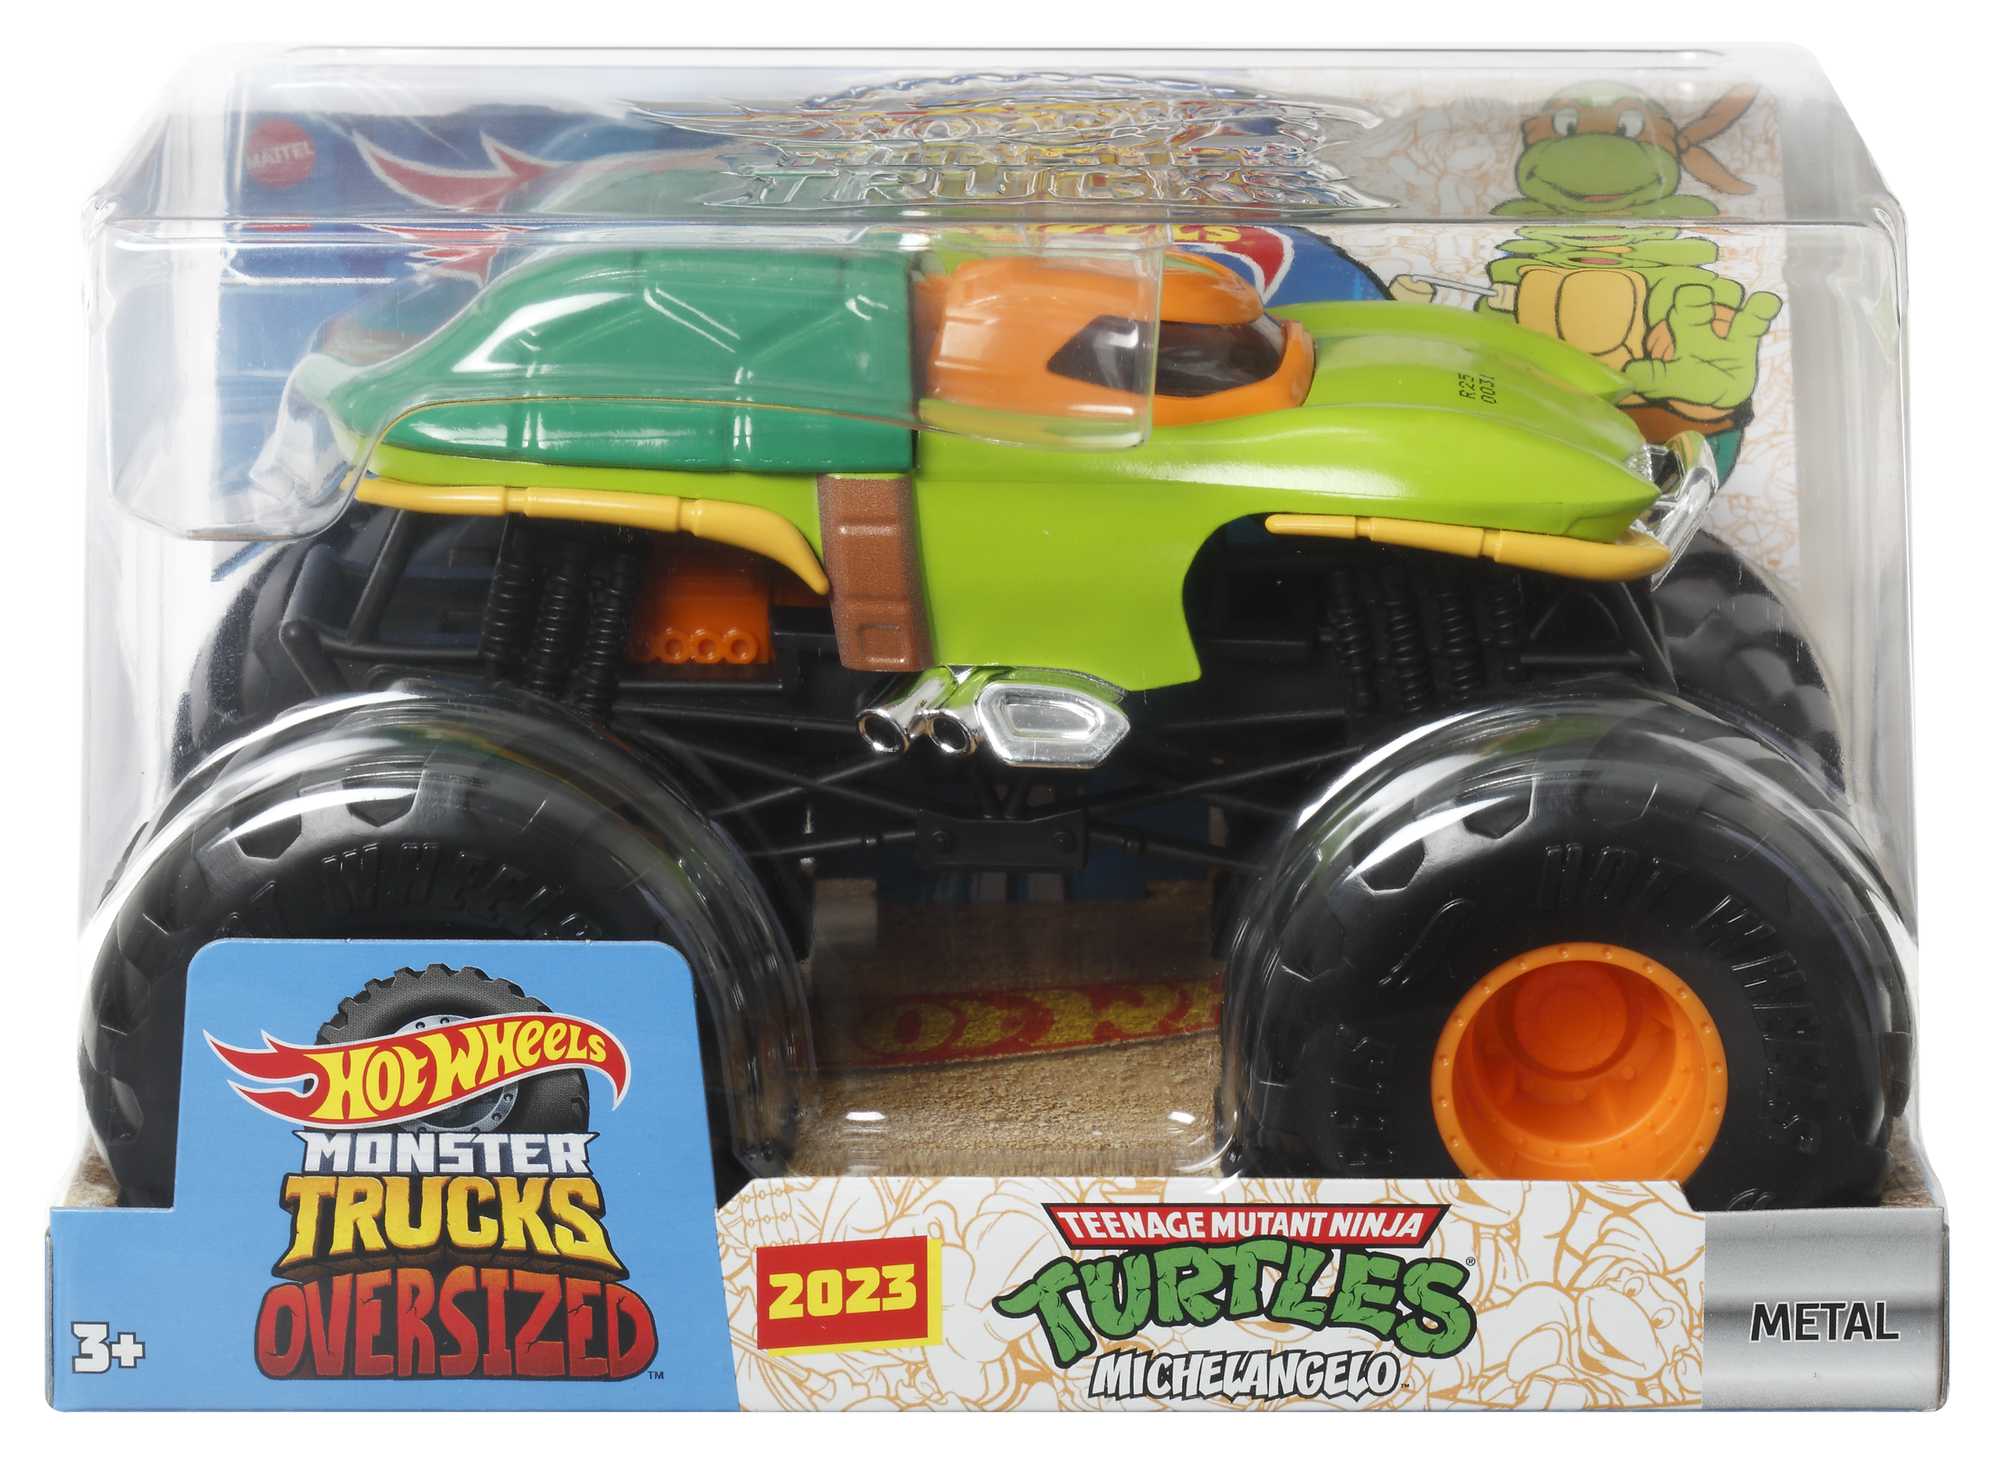 Pista Monster Trucks Pneus De Acrobacia - Hot Wheels - Mattel, Rosa